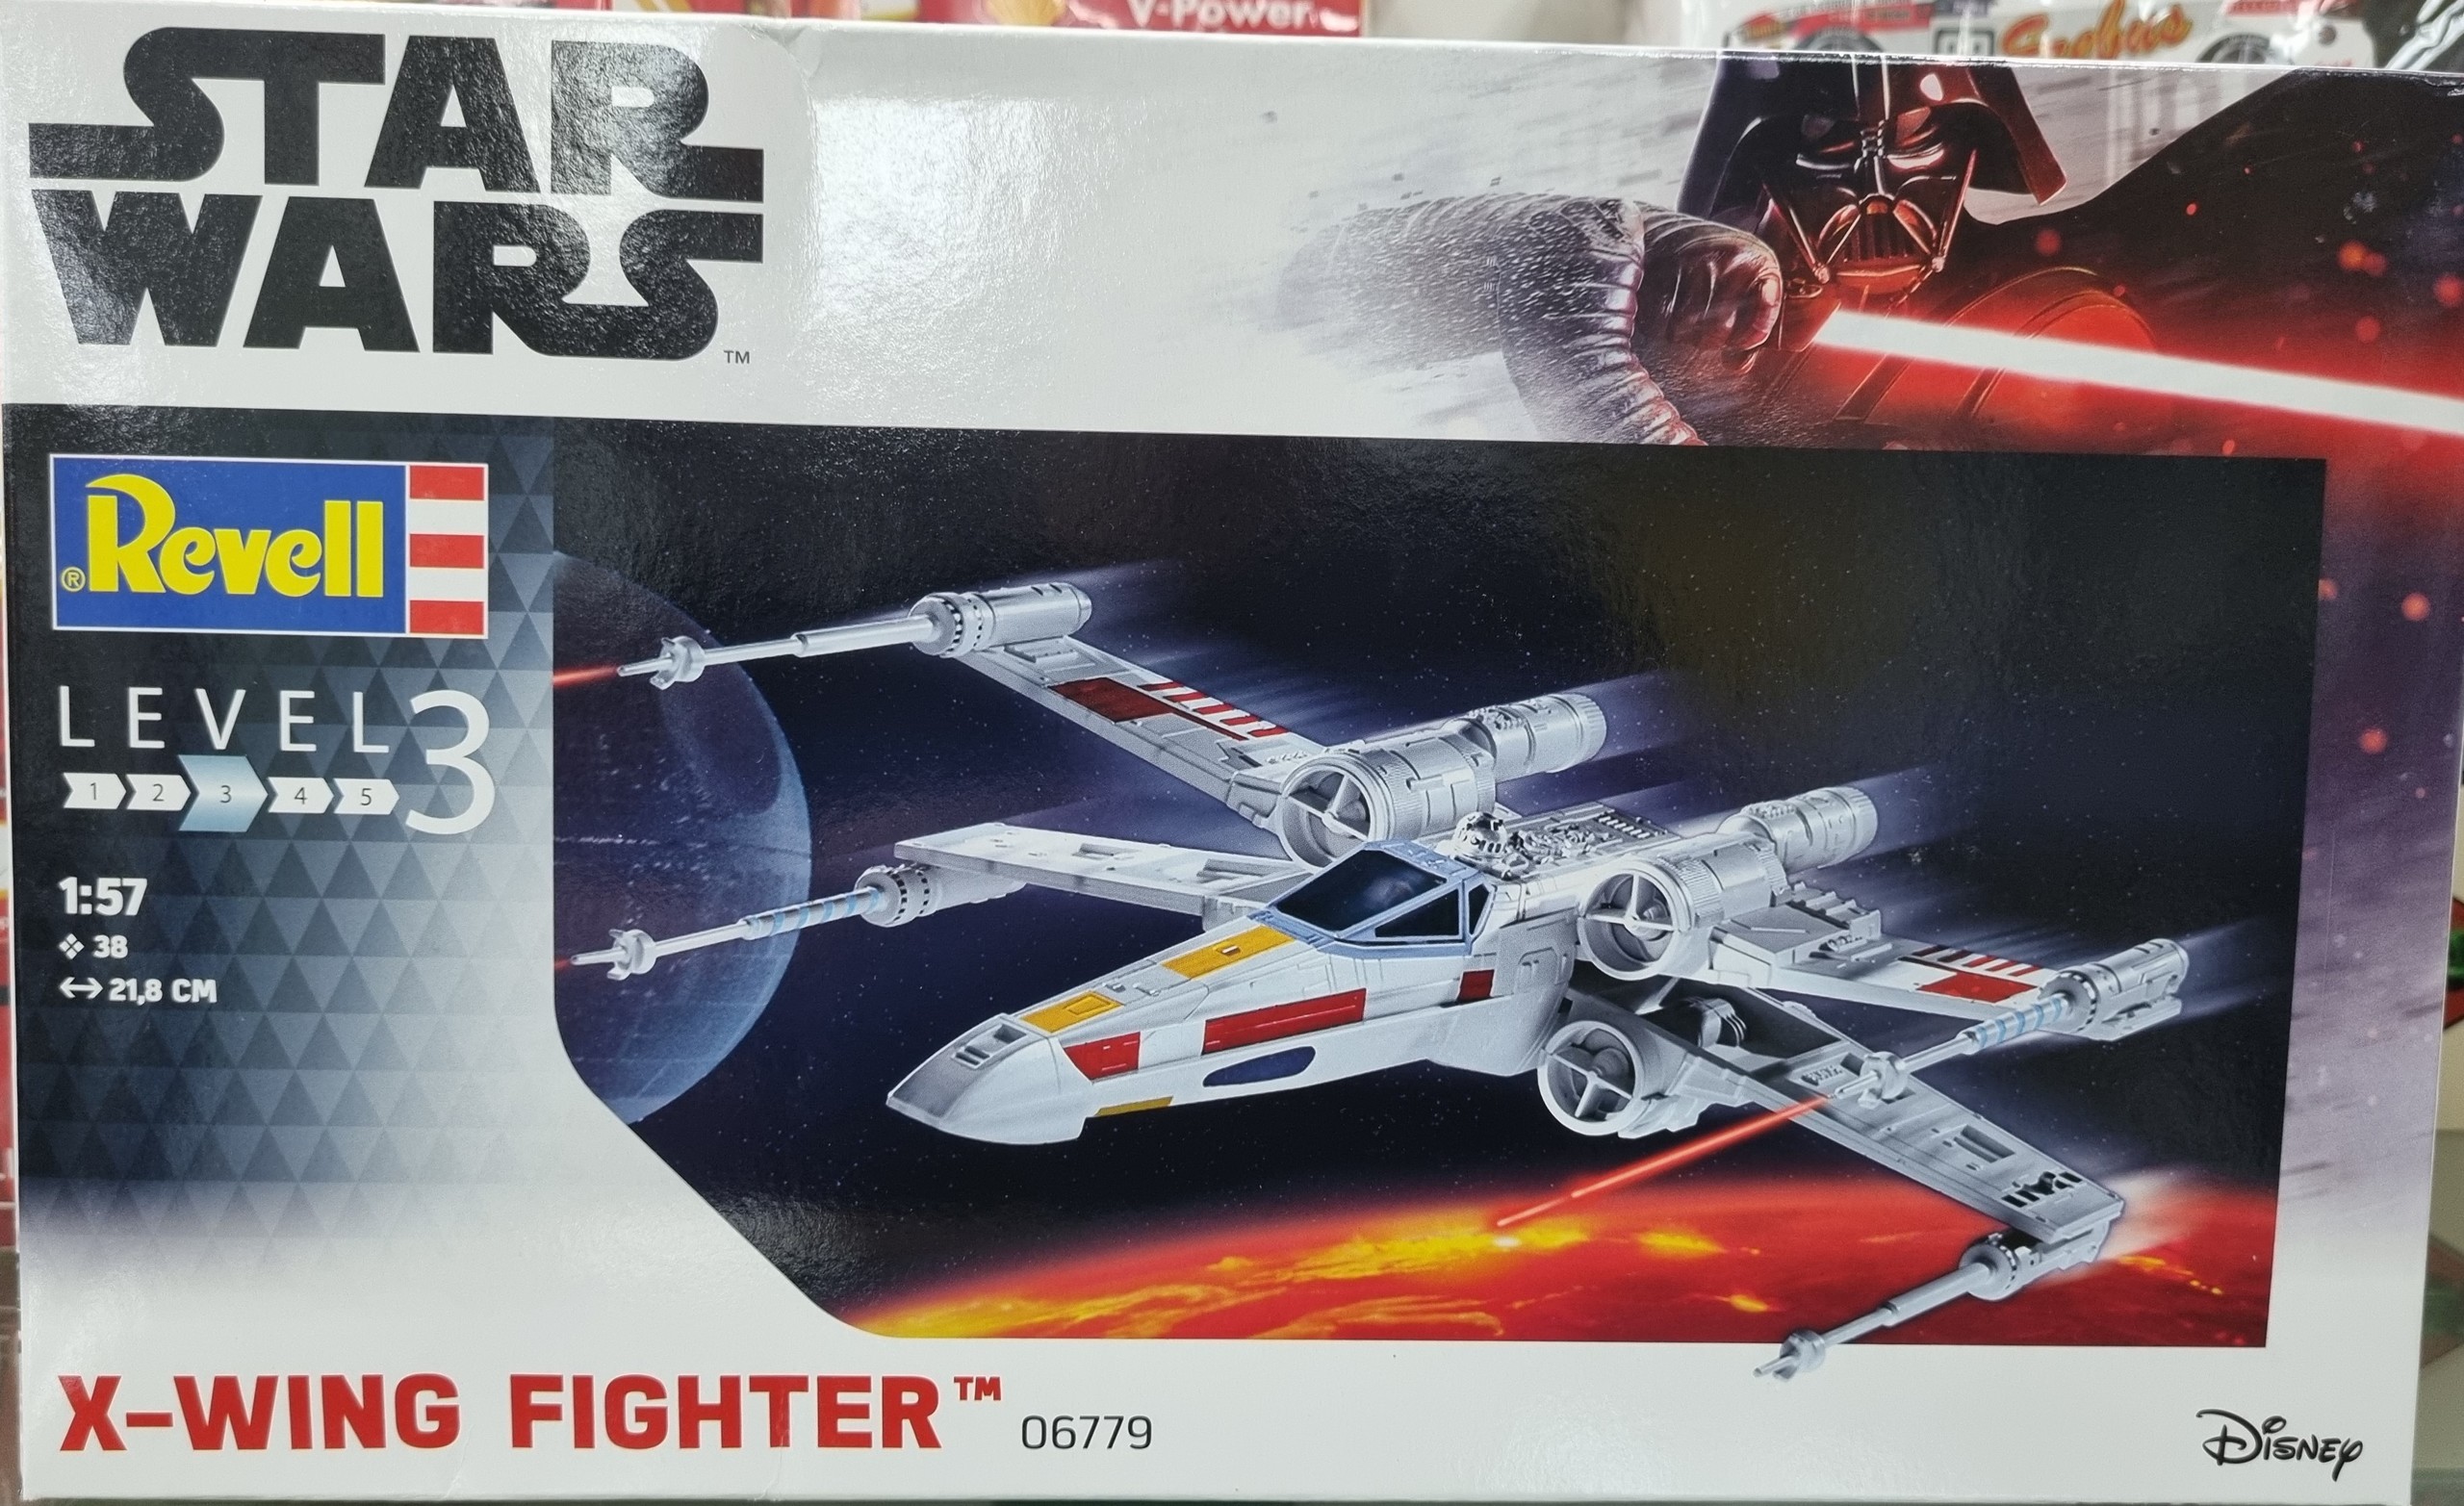 Star Wars X-Wing Fighter Kitset 1/57 Revell Level 3